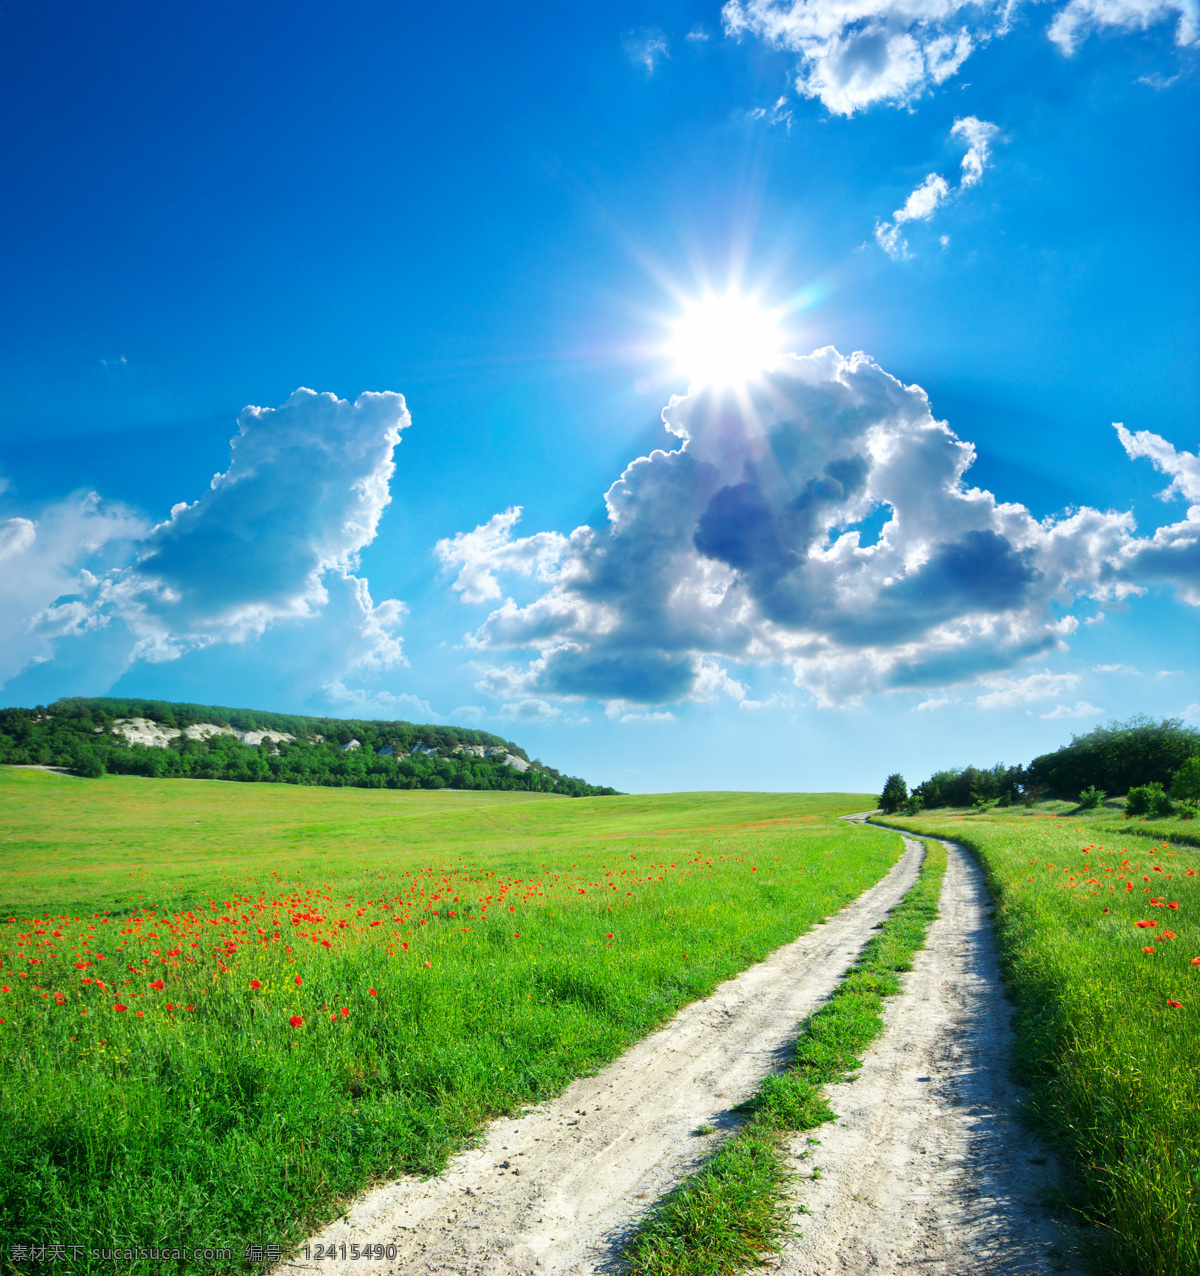 通往 美好 未来 小路 郊外 迷人 风景 夺目的阳光 芬芳的花朵 青绿 草地 湛蓝 天空 天空图片 风景图片